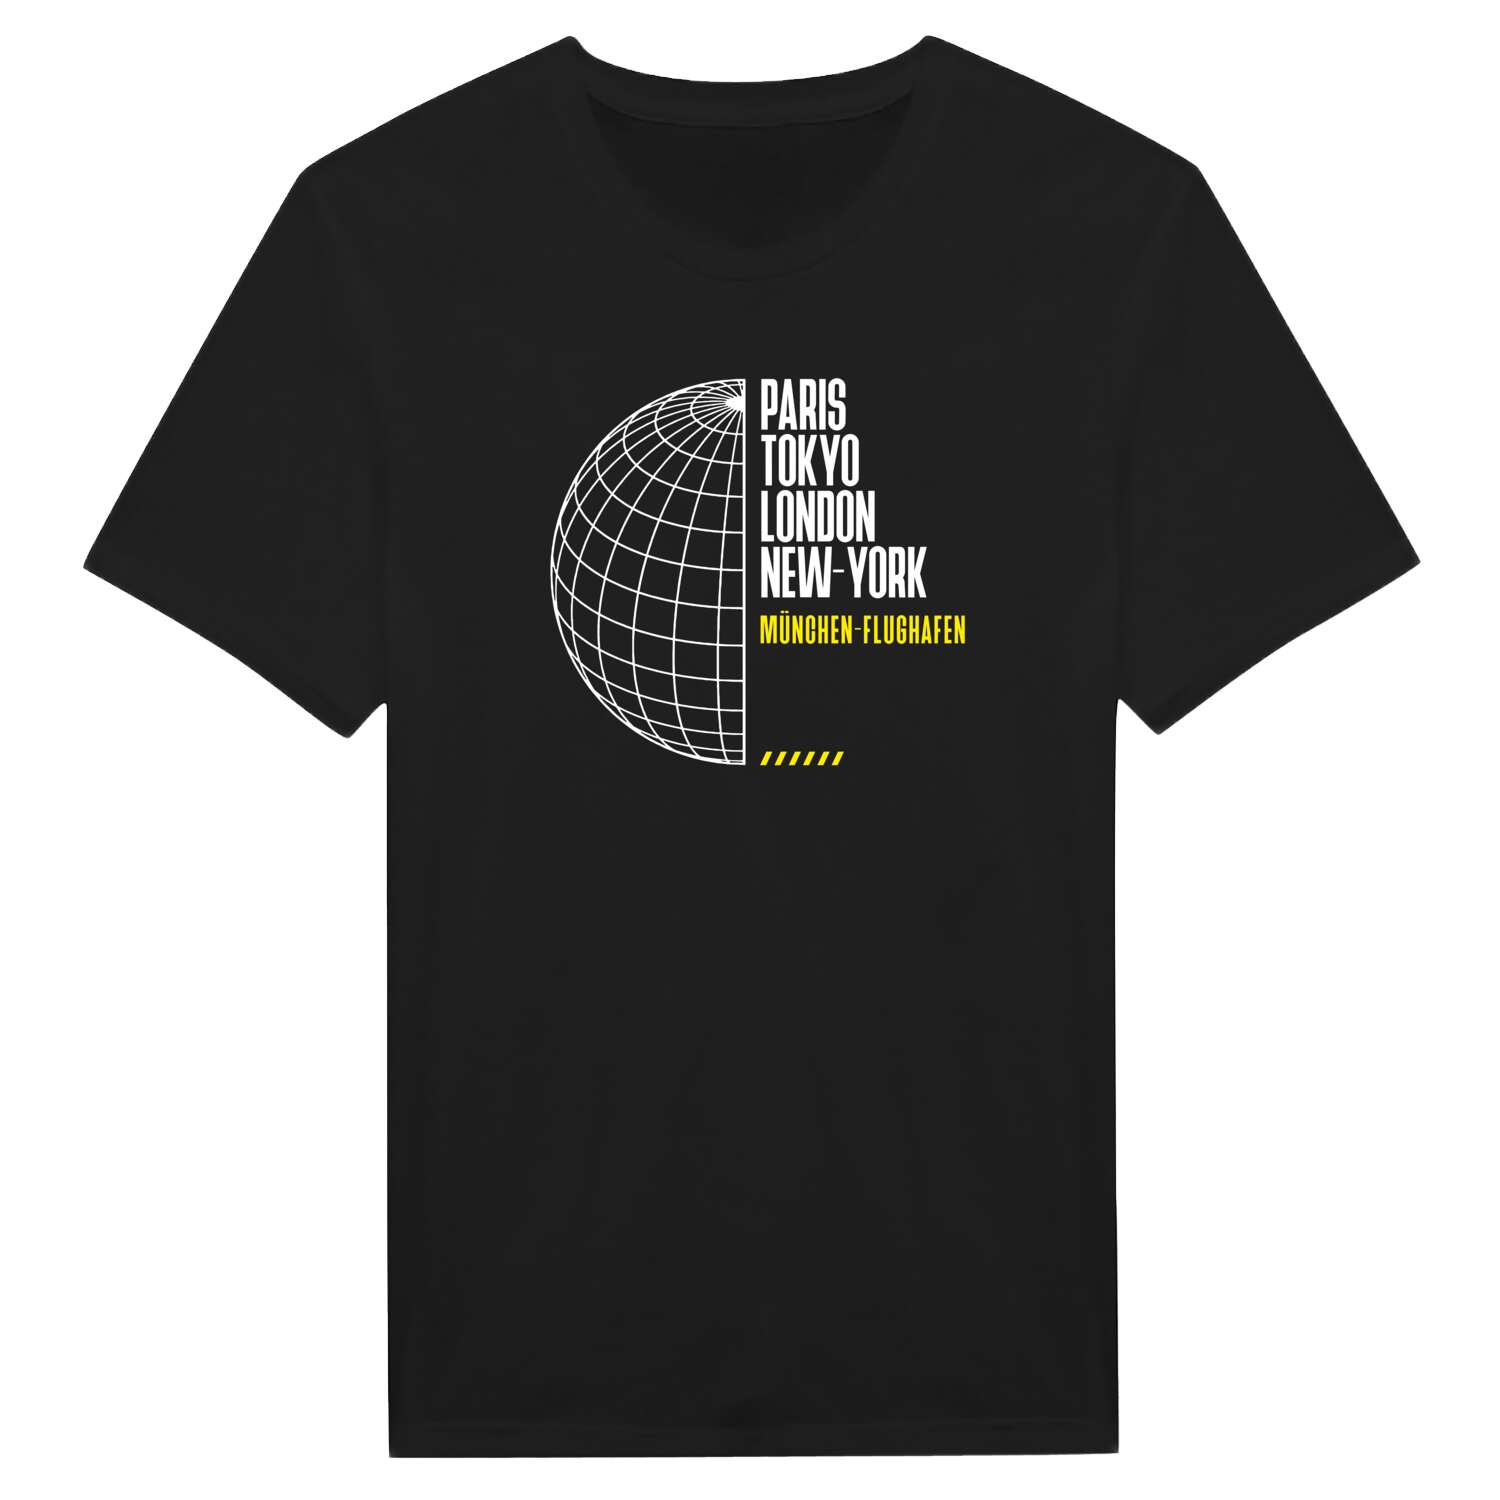 München-Flughafen T-Shirt »Paris Tokyo London«